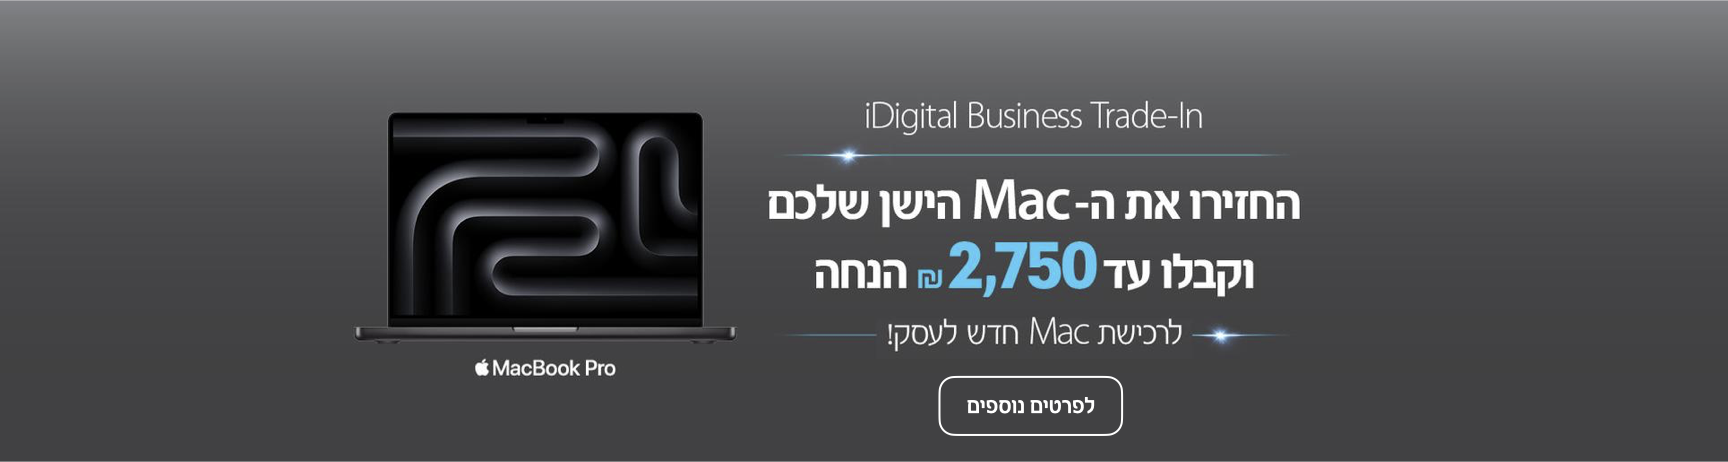 iDigital Business Trade-In. החזירו את ה-Mac הישן שלכם וקבלו עד 2750 שח הנחה לרכישת Mac חדש לעסק. לפרטים נוספים